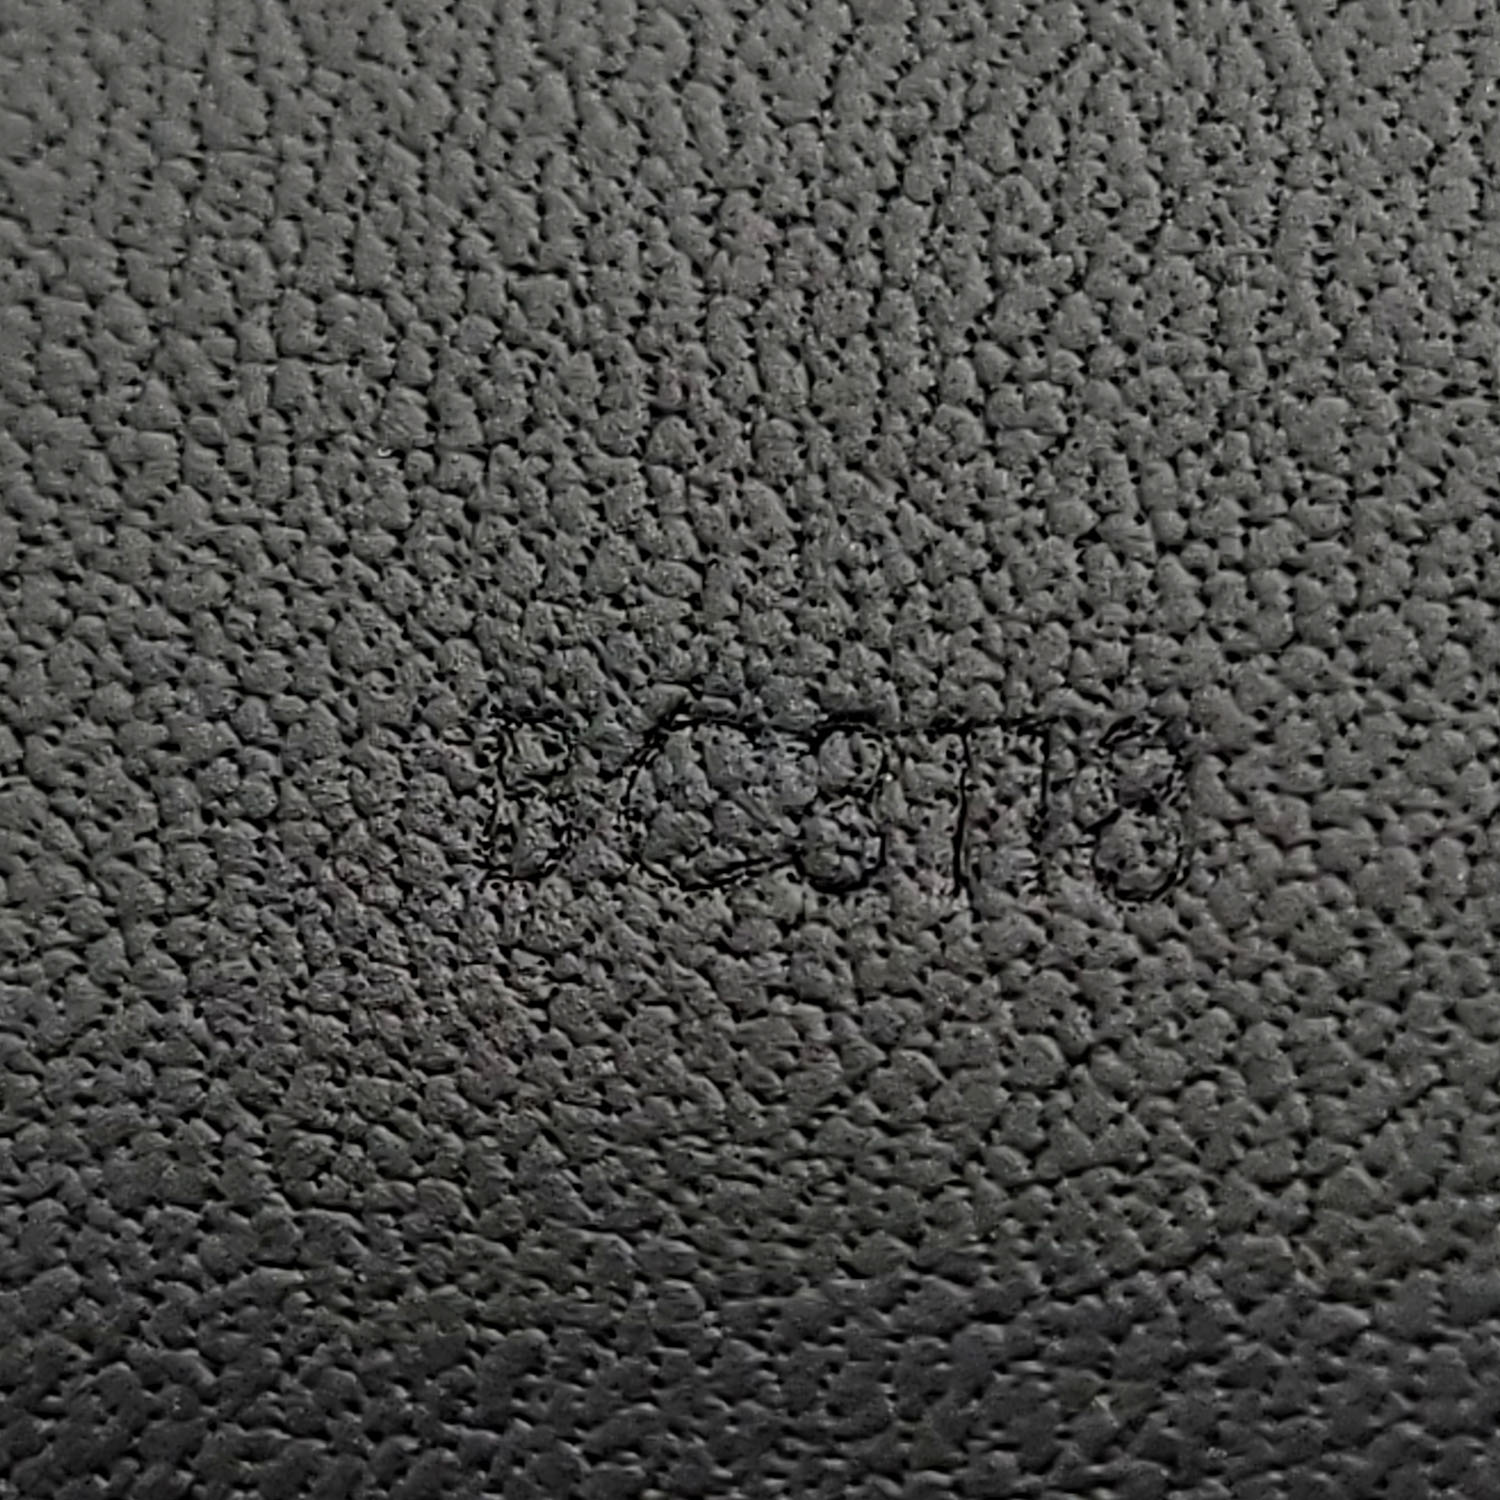 Louis Vuitton Men's Black Leather Voyager 35 MM Belt size 34" /  85 cm